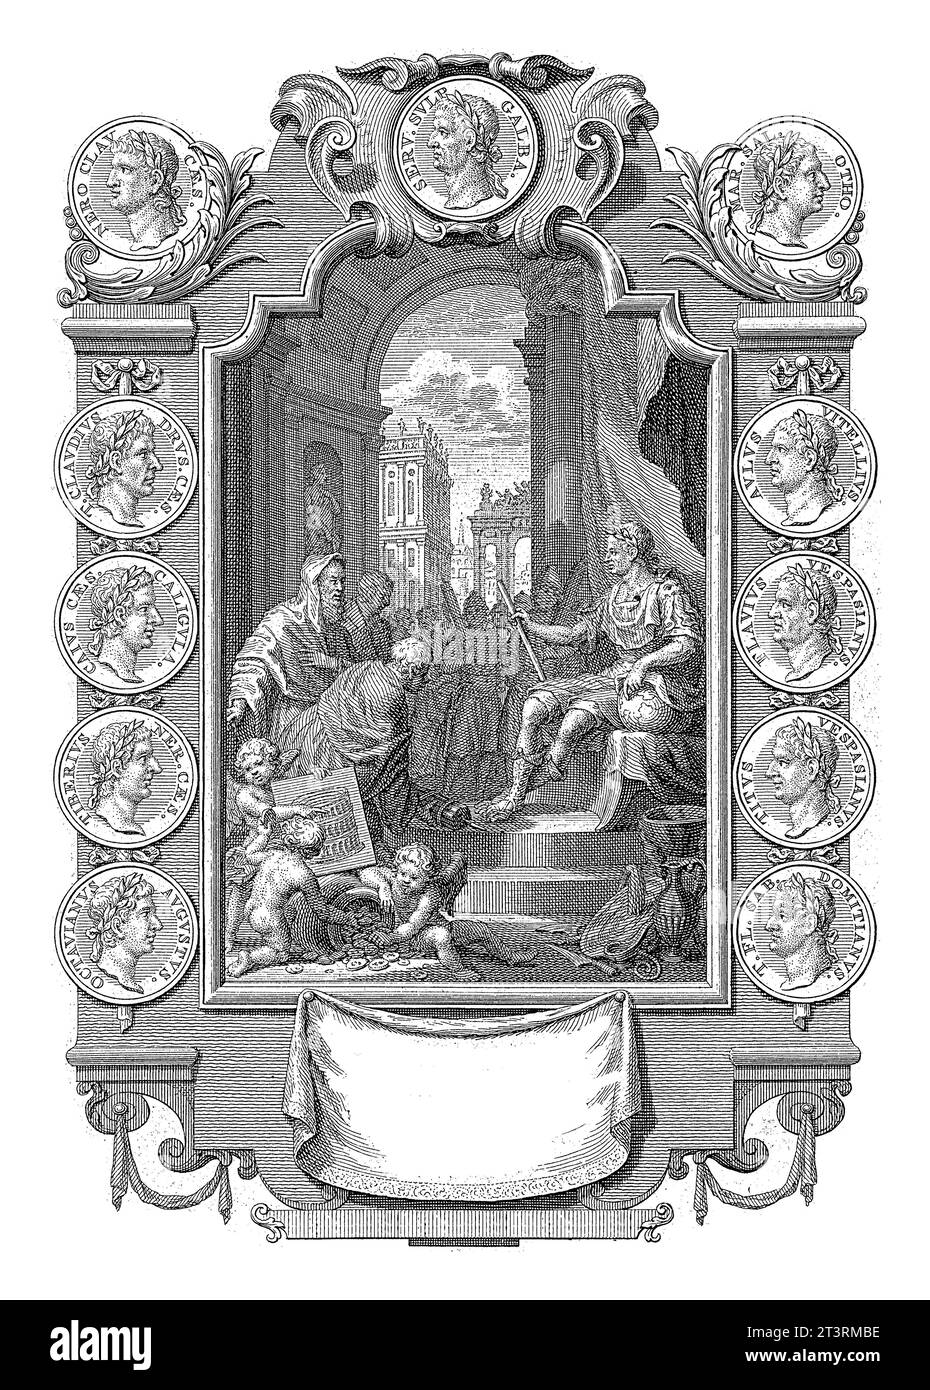 Allégorie de la règle romaine, Jan Caspar Philips, 1746 Un empereur romain est assis sur son trône, sceptre et globe dans ses mains. Un prêtre lui apporte un sacrificiel A. Banque D'Images